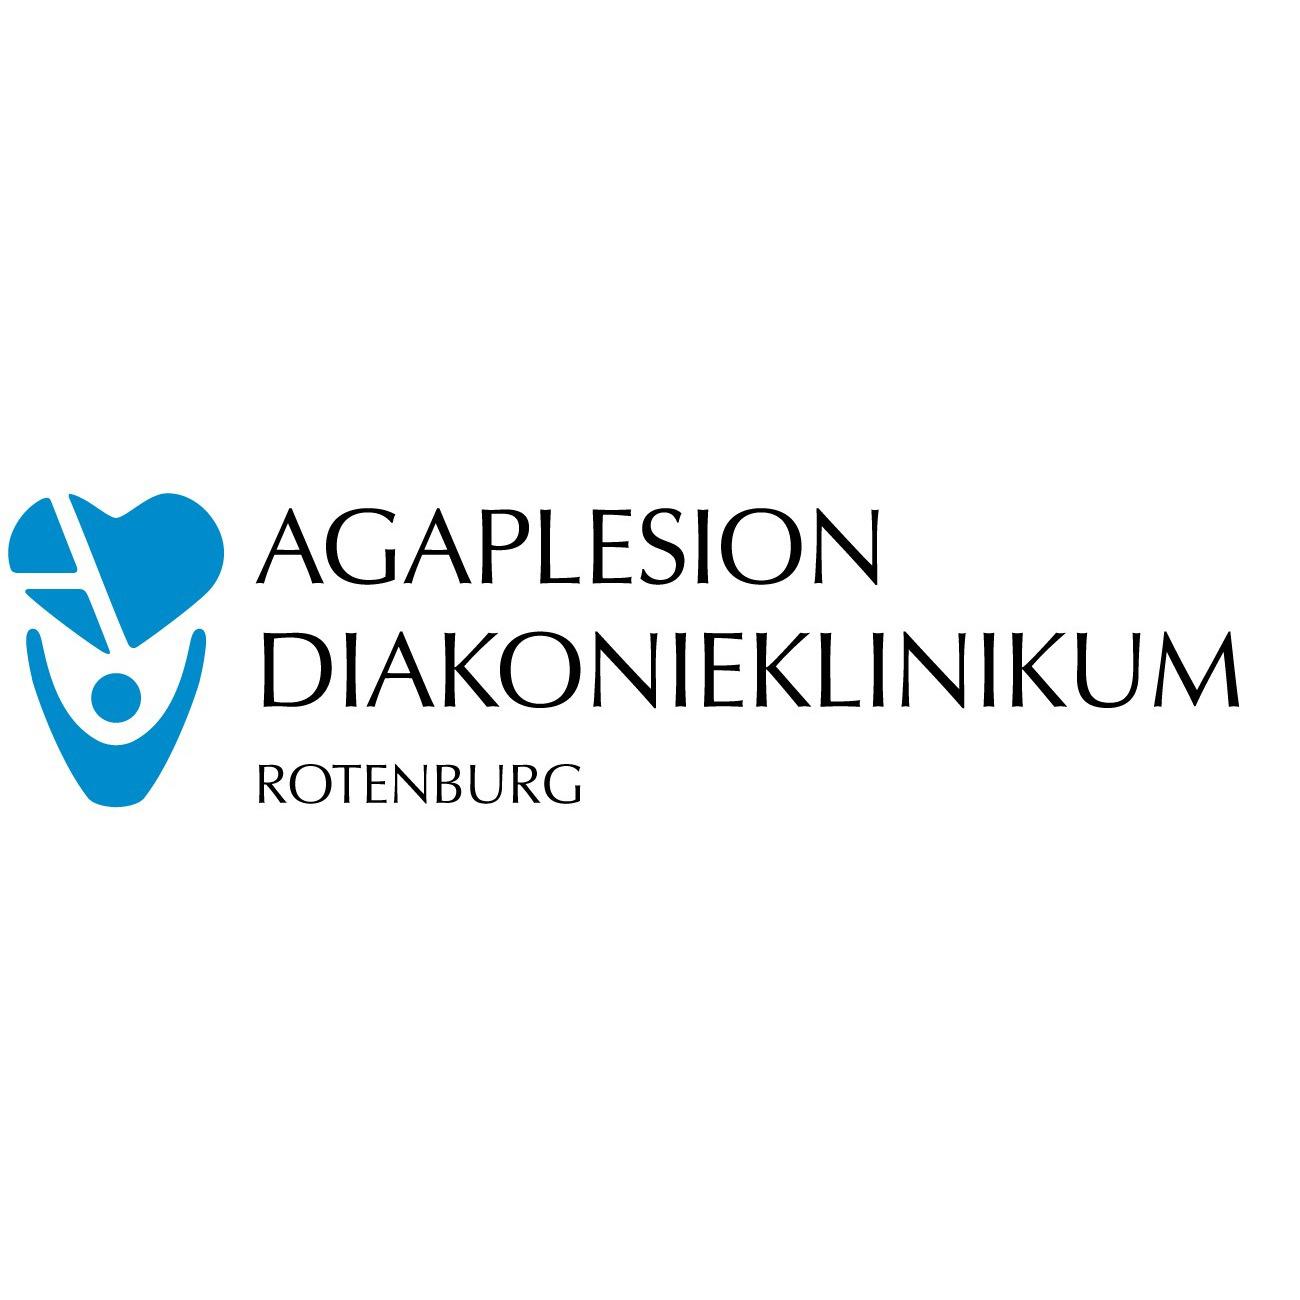 AGAPLESION DIAKONIEKLINIKUM ROTENBURG  